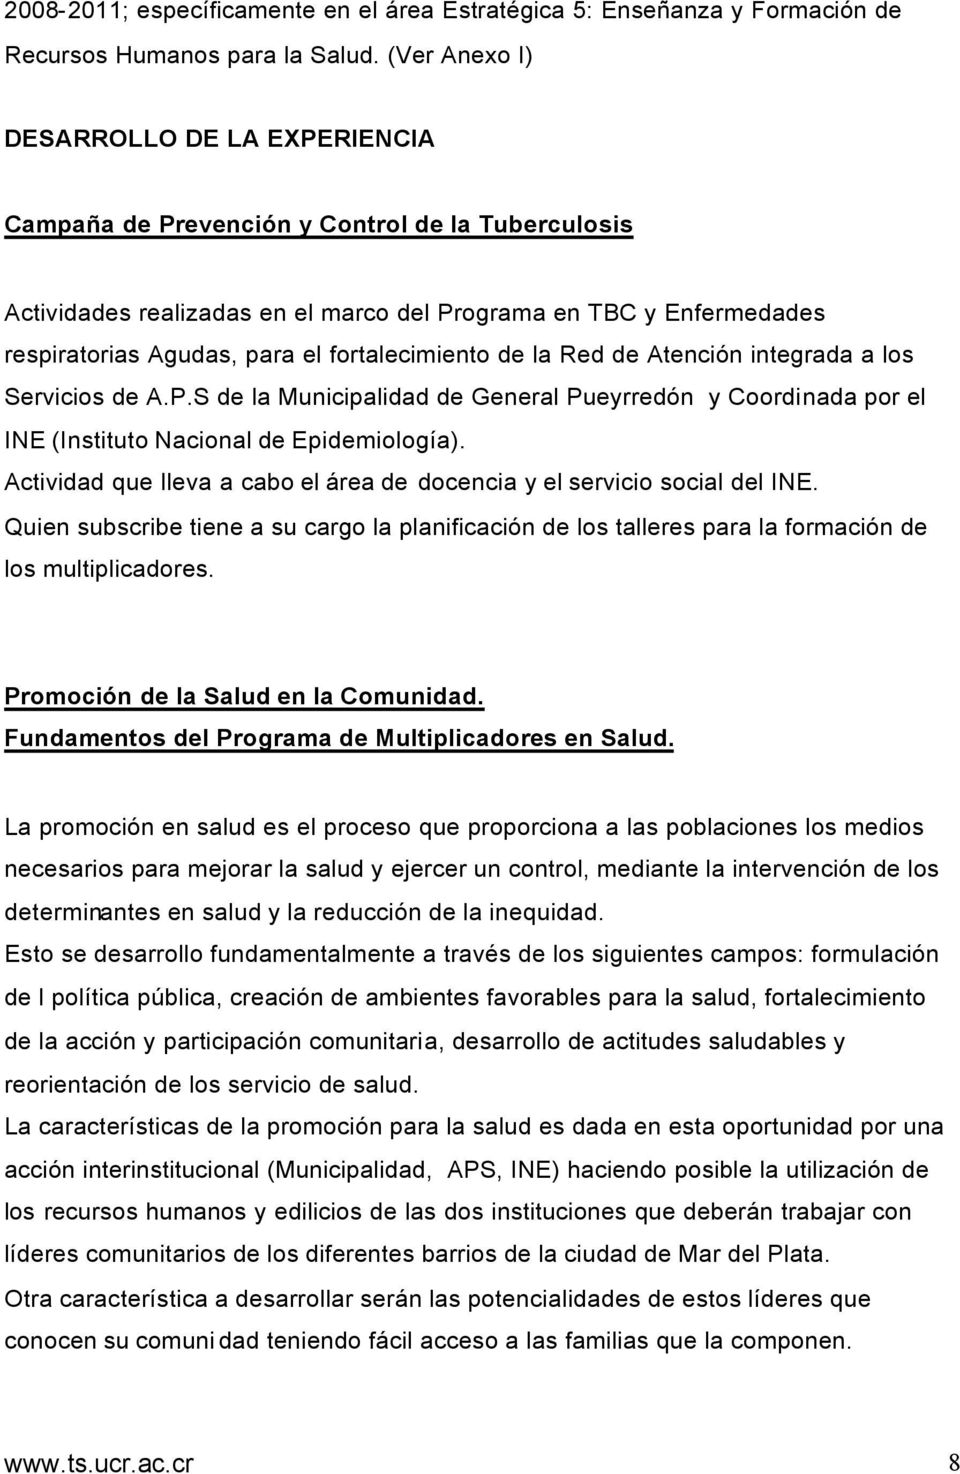 fortalecimiento de la Red de Atención integrada a los Servicios de A.P.S de la Municipalidad de General Pueyrredón y Coordinada por el INE (Instituto Nacional de Epidemiología).